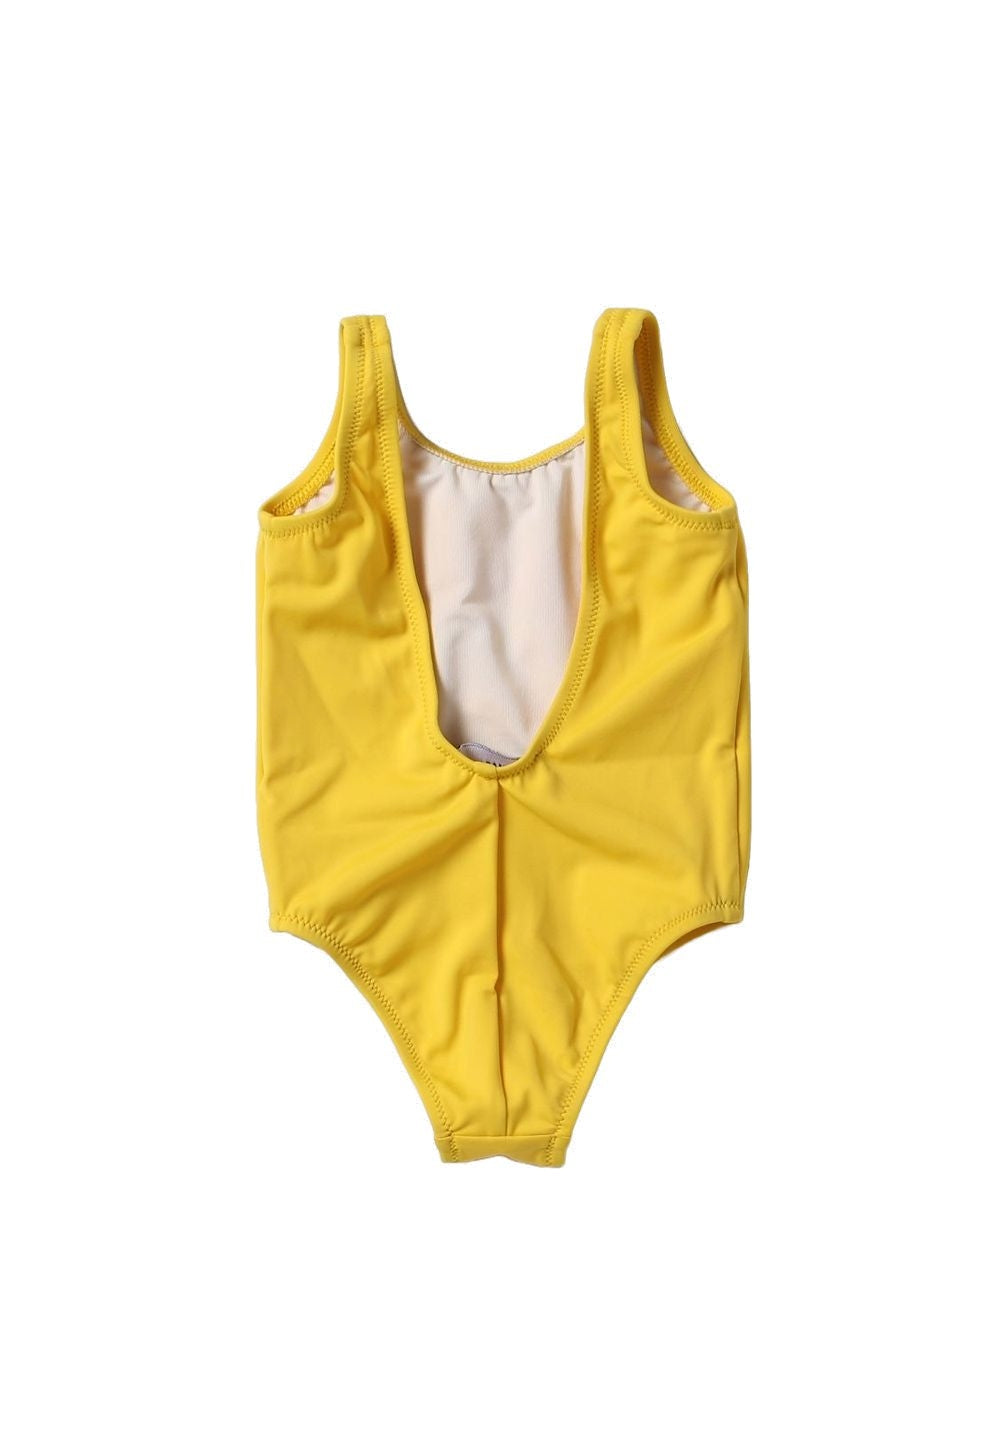 Costume giallo per neonata - Primamoda kids